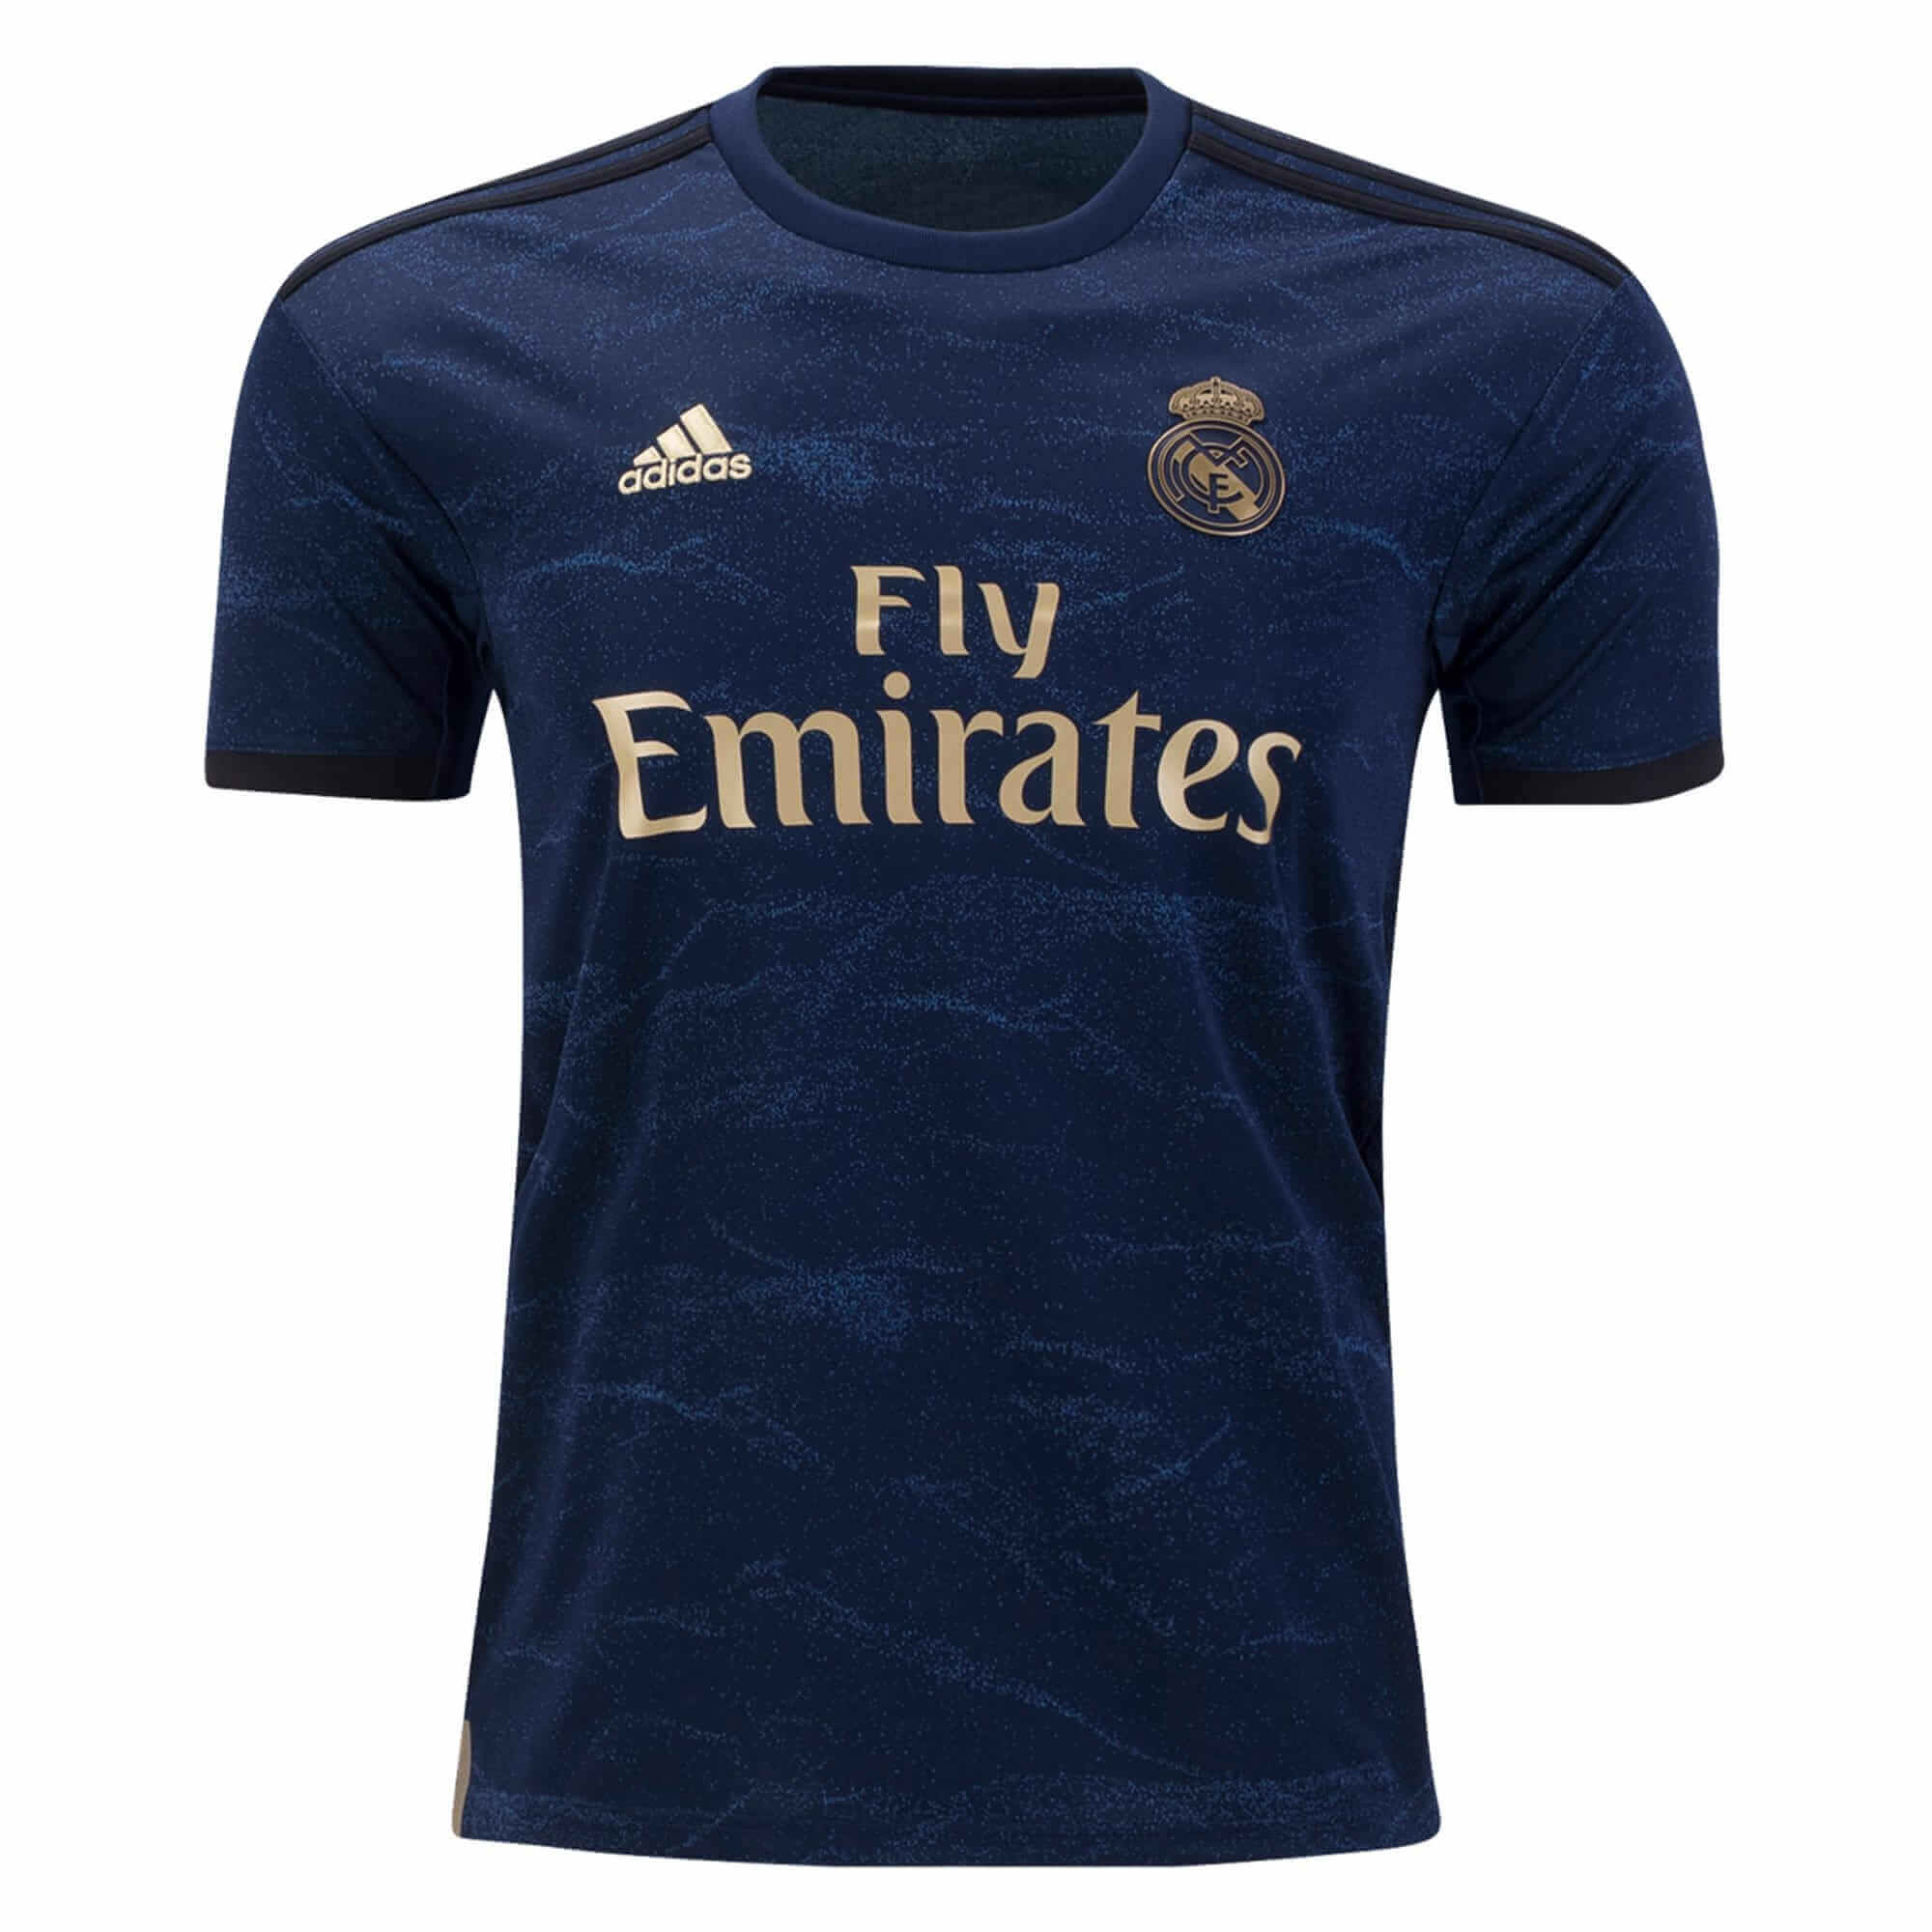 Real Madrid Camiseta de la 3ª equipación 19/20